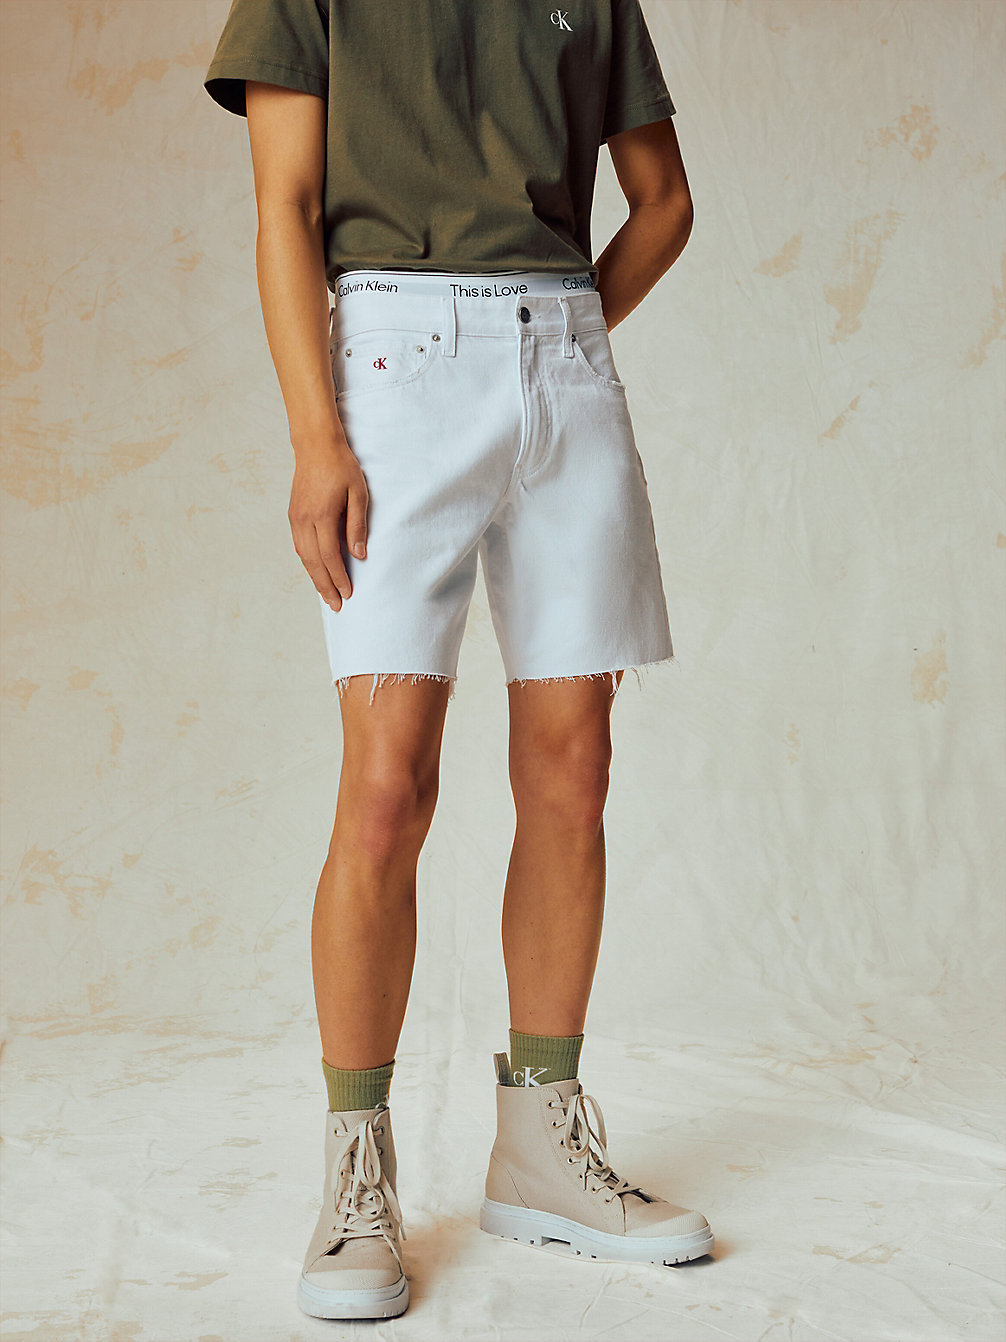 BRIGHT WHITE > Denim-Shorts - Pride > undefined Herren - Calvin Klein